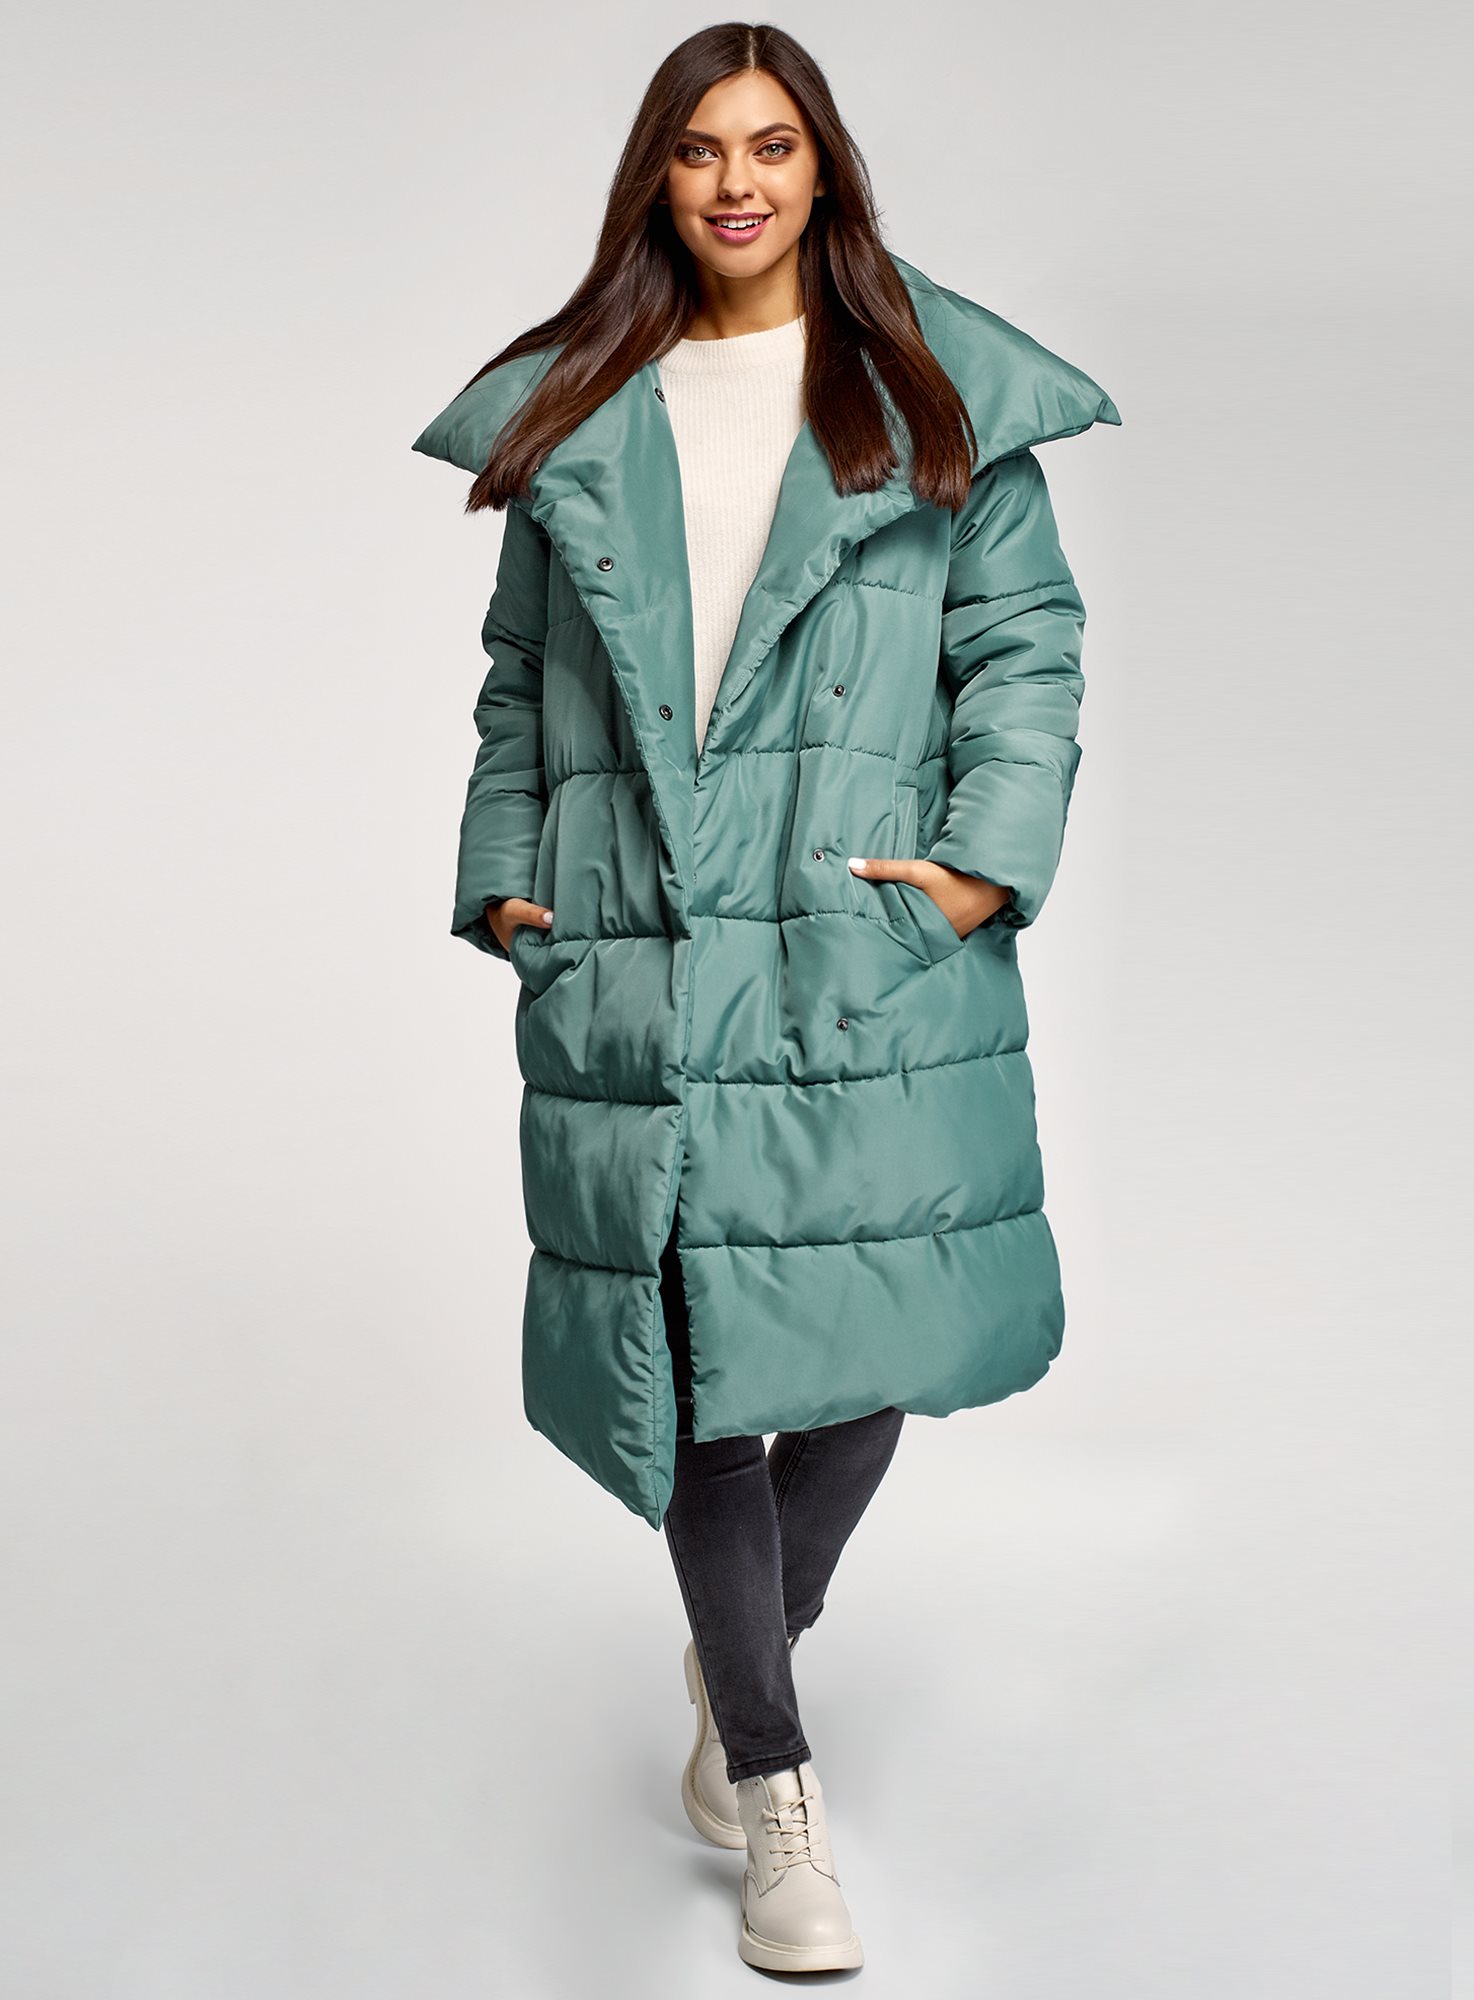 Куртка утепленная удлиненная. Куртка удлиненная oodji. Утепленное пальто, oodji. Куртки удлиненные женские. Зеленый пуховик.